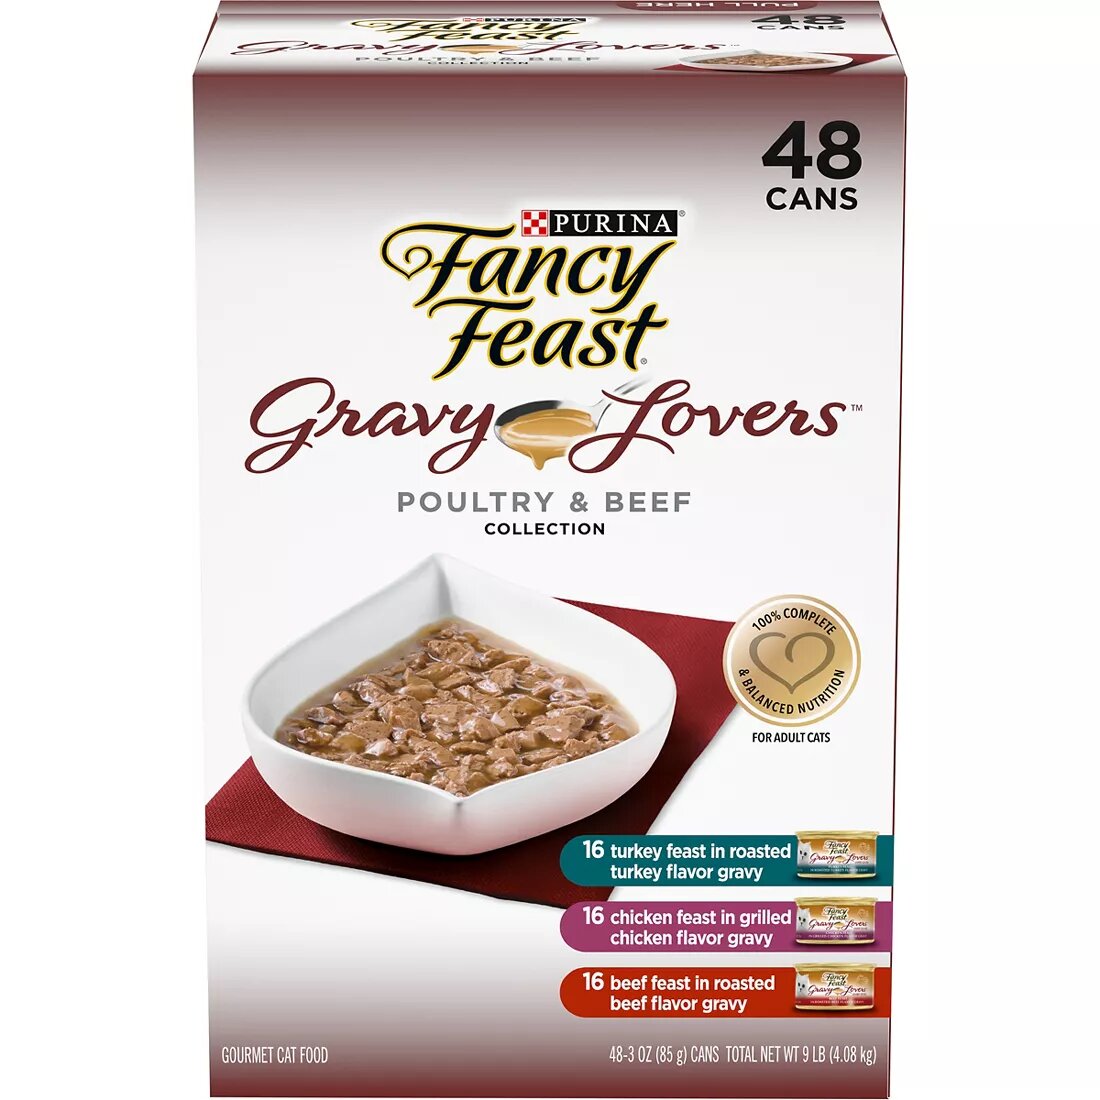 Purina Fancy Feast Gravy Lovers Poultry & Beef - 48ct/1pk